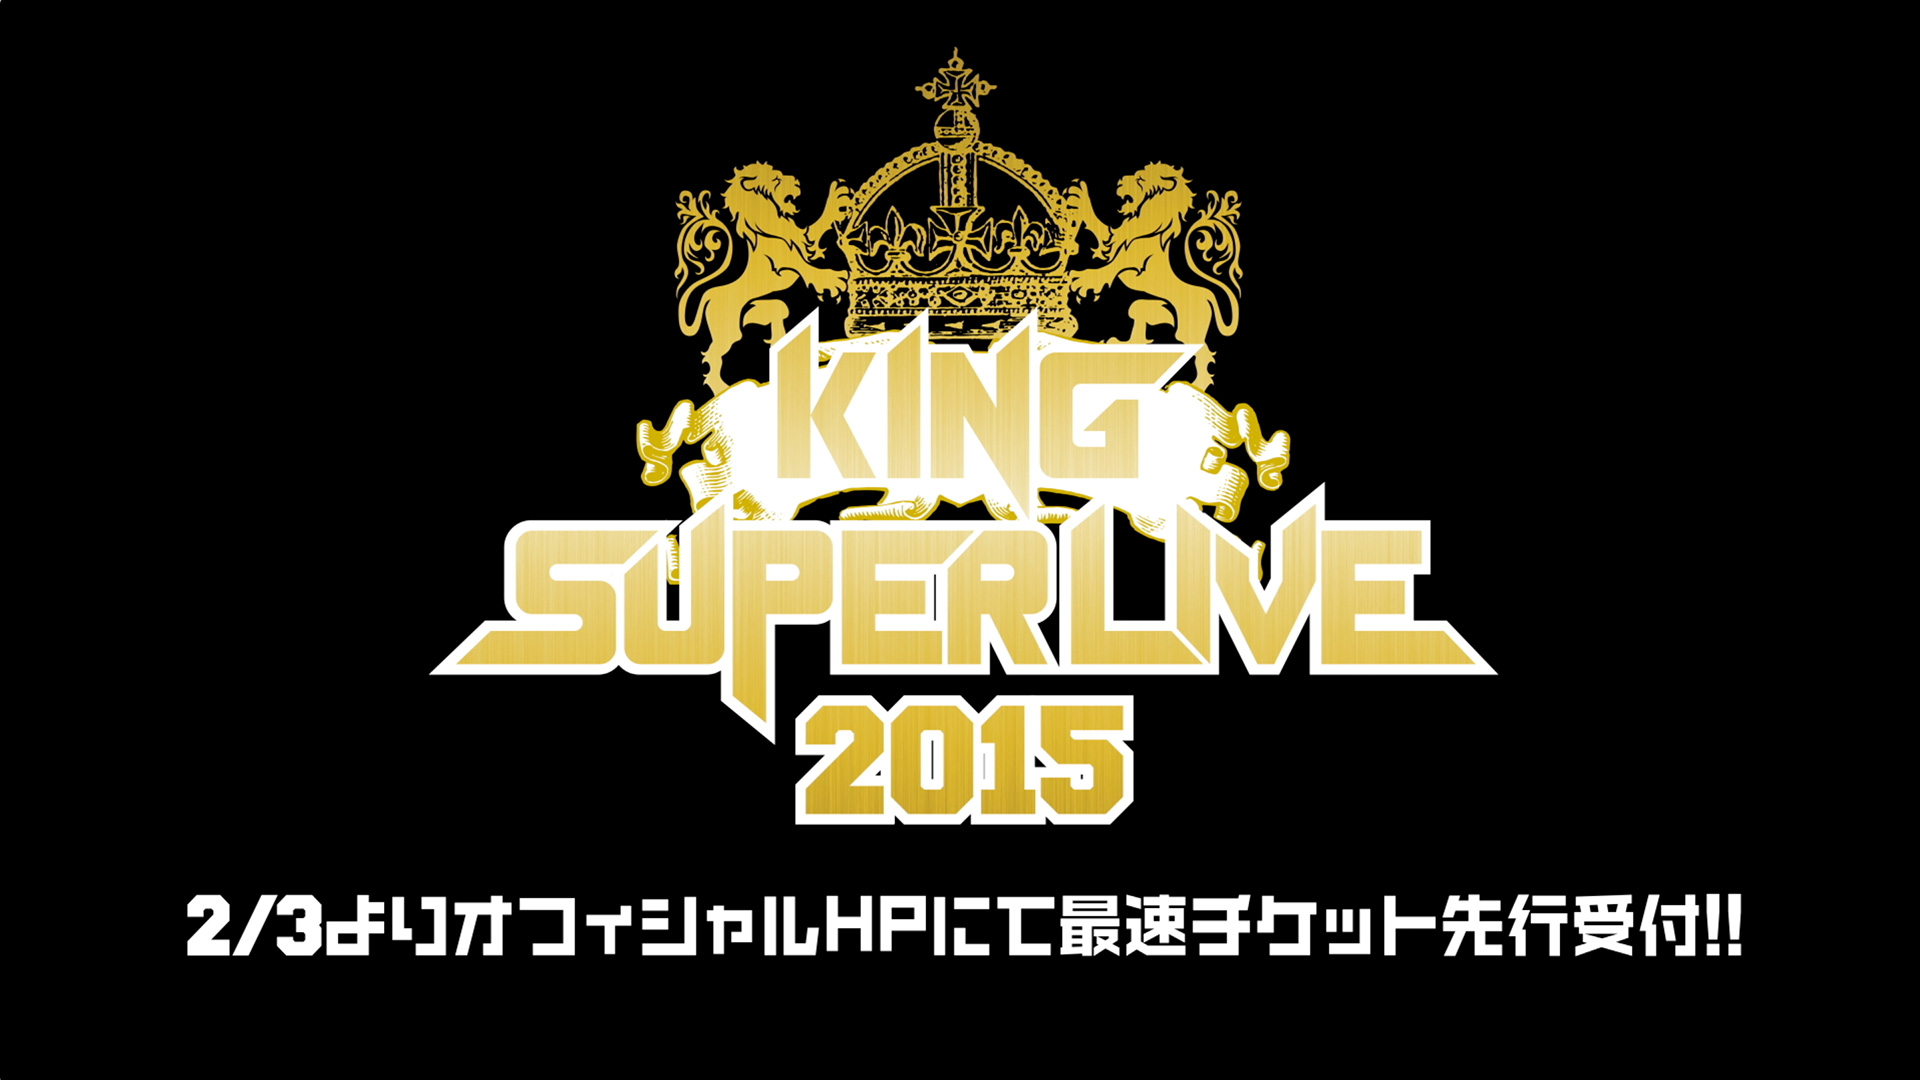 King Super Live 15